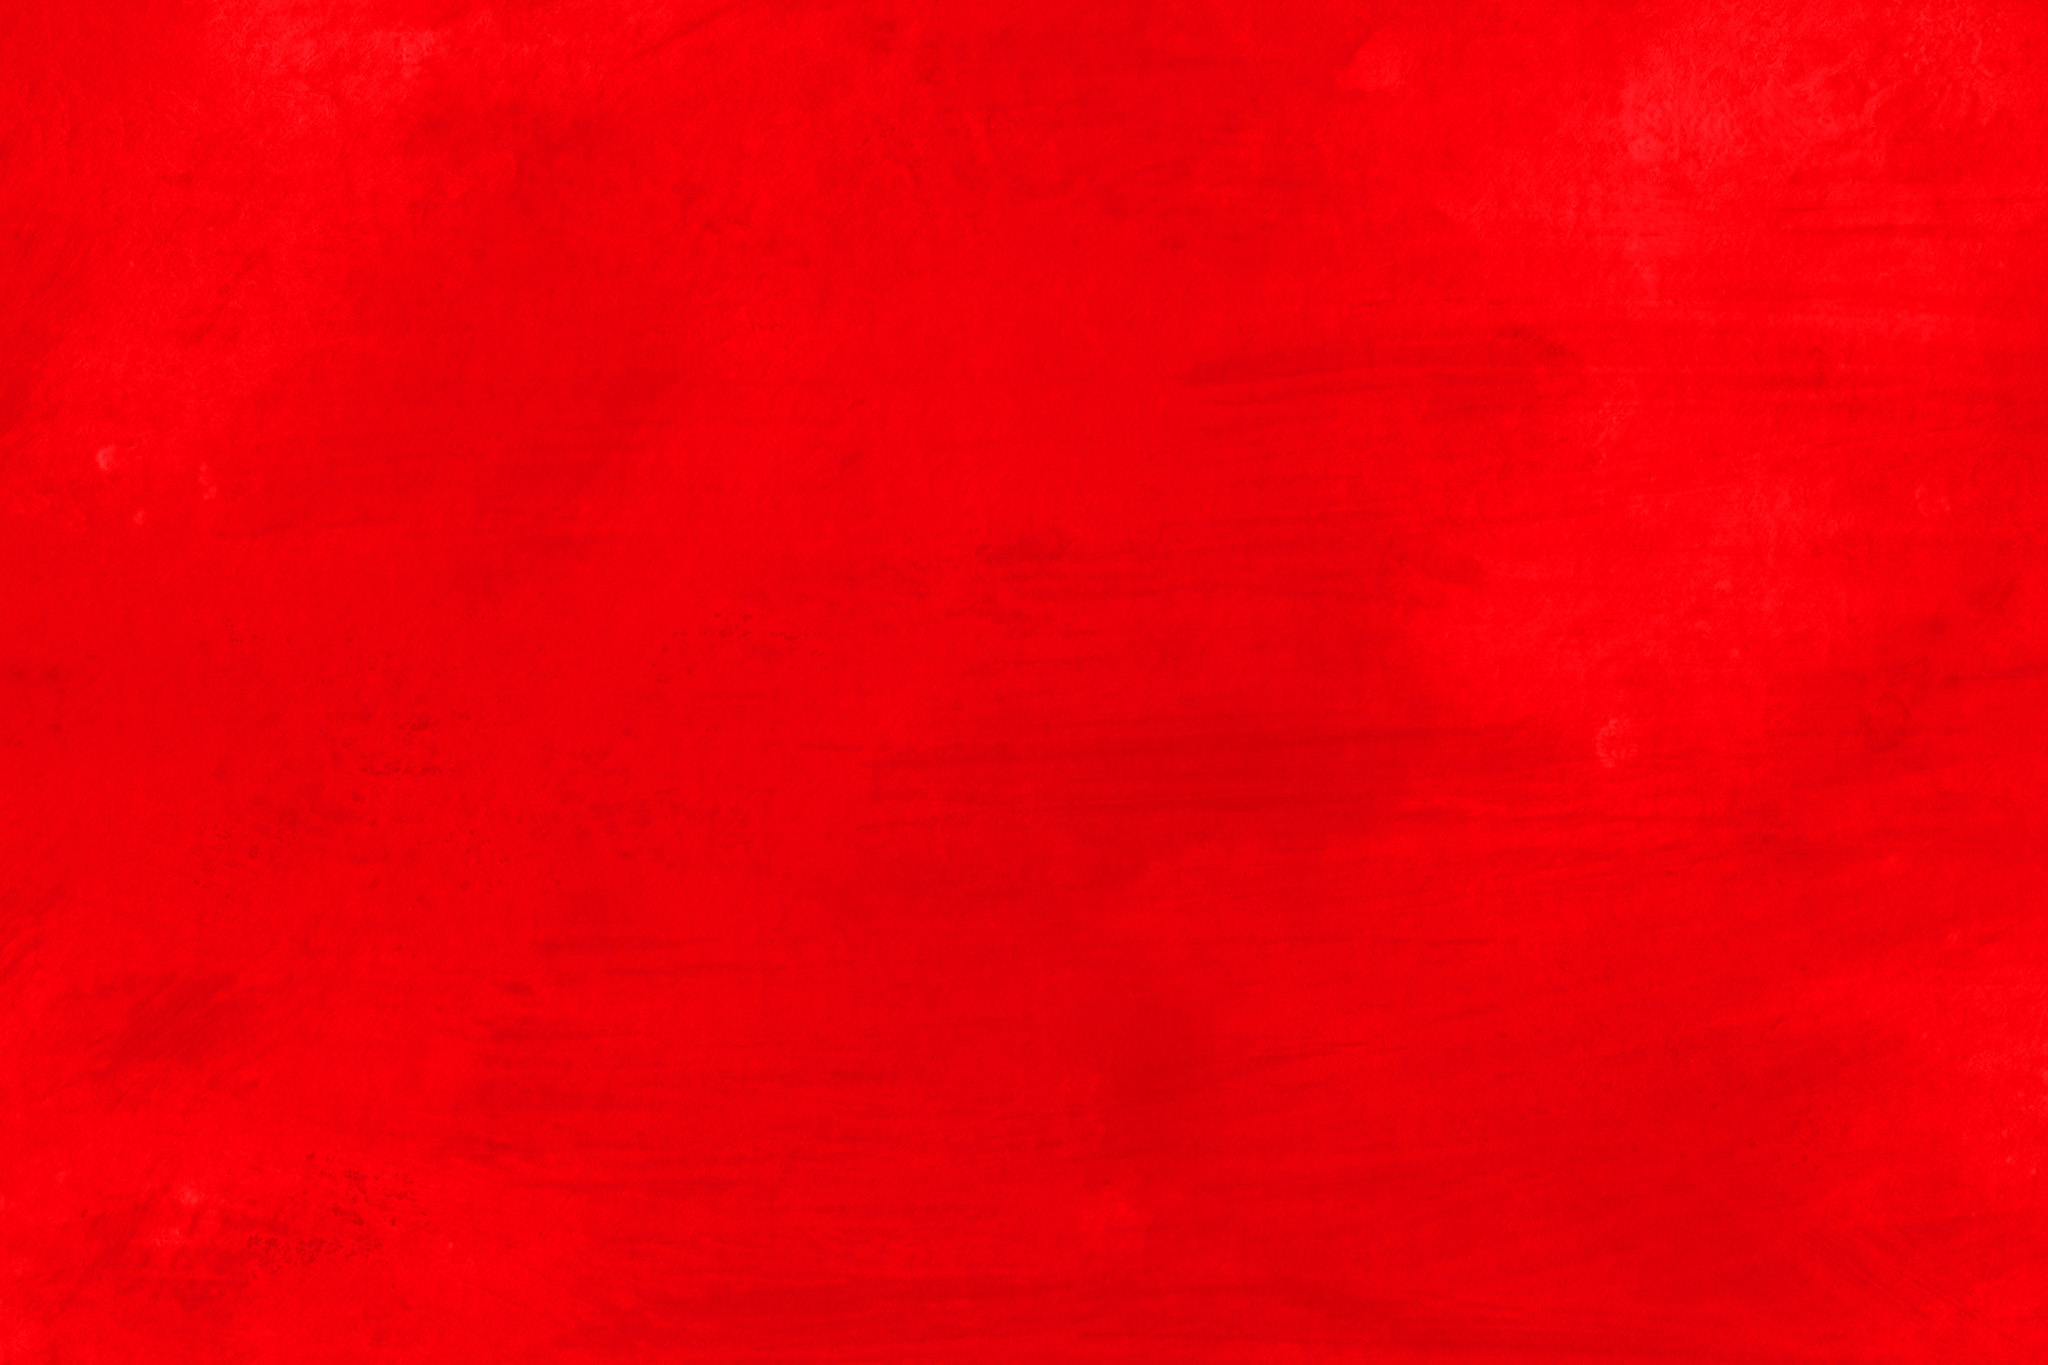 おしゃれな赤のかっこいい壁紙 の画像素材を無料ダウンロード 1 背景フリー素材 Beiz Images